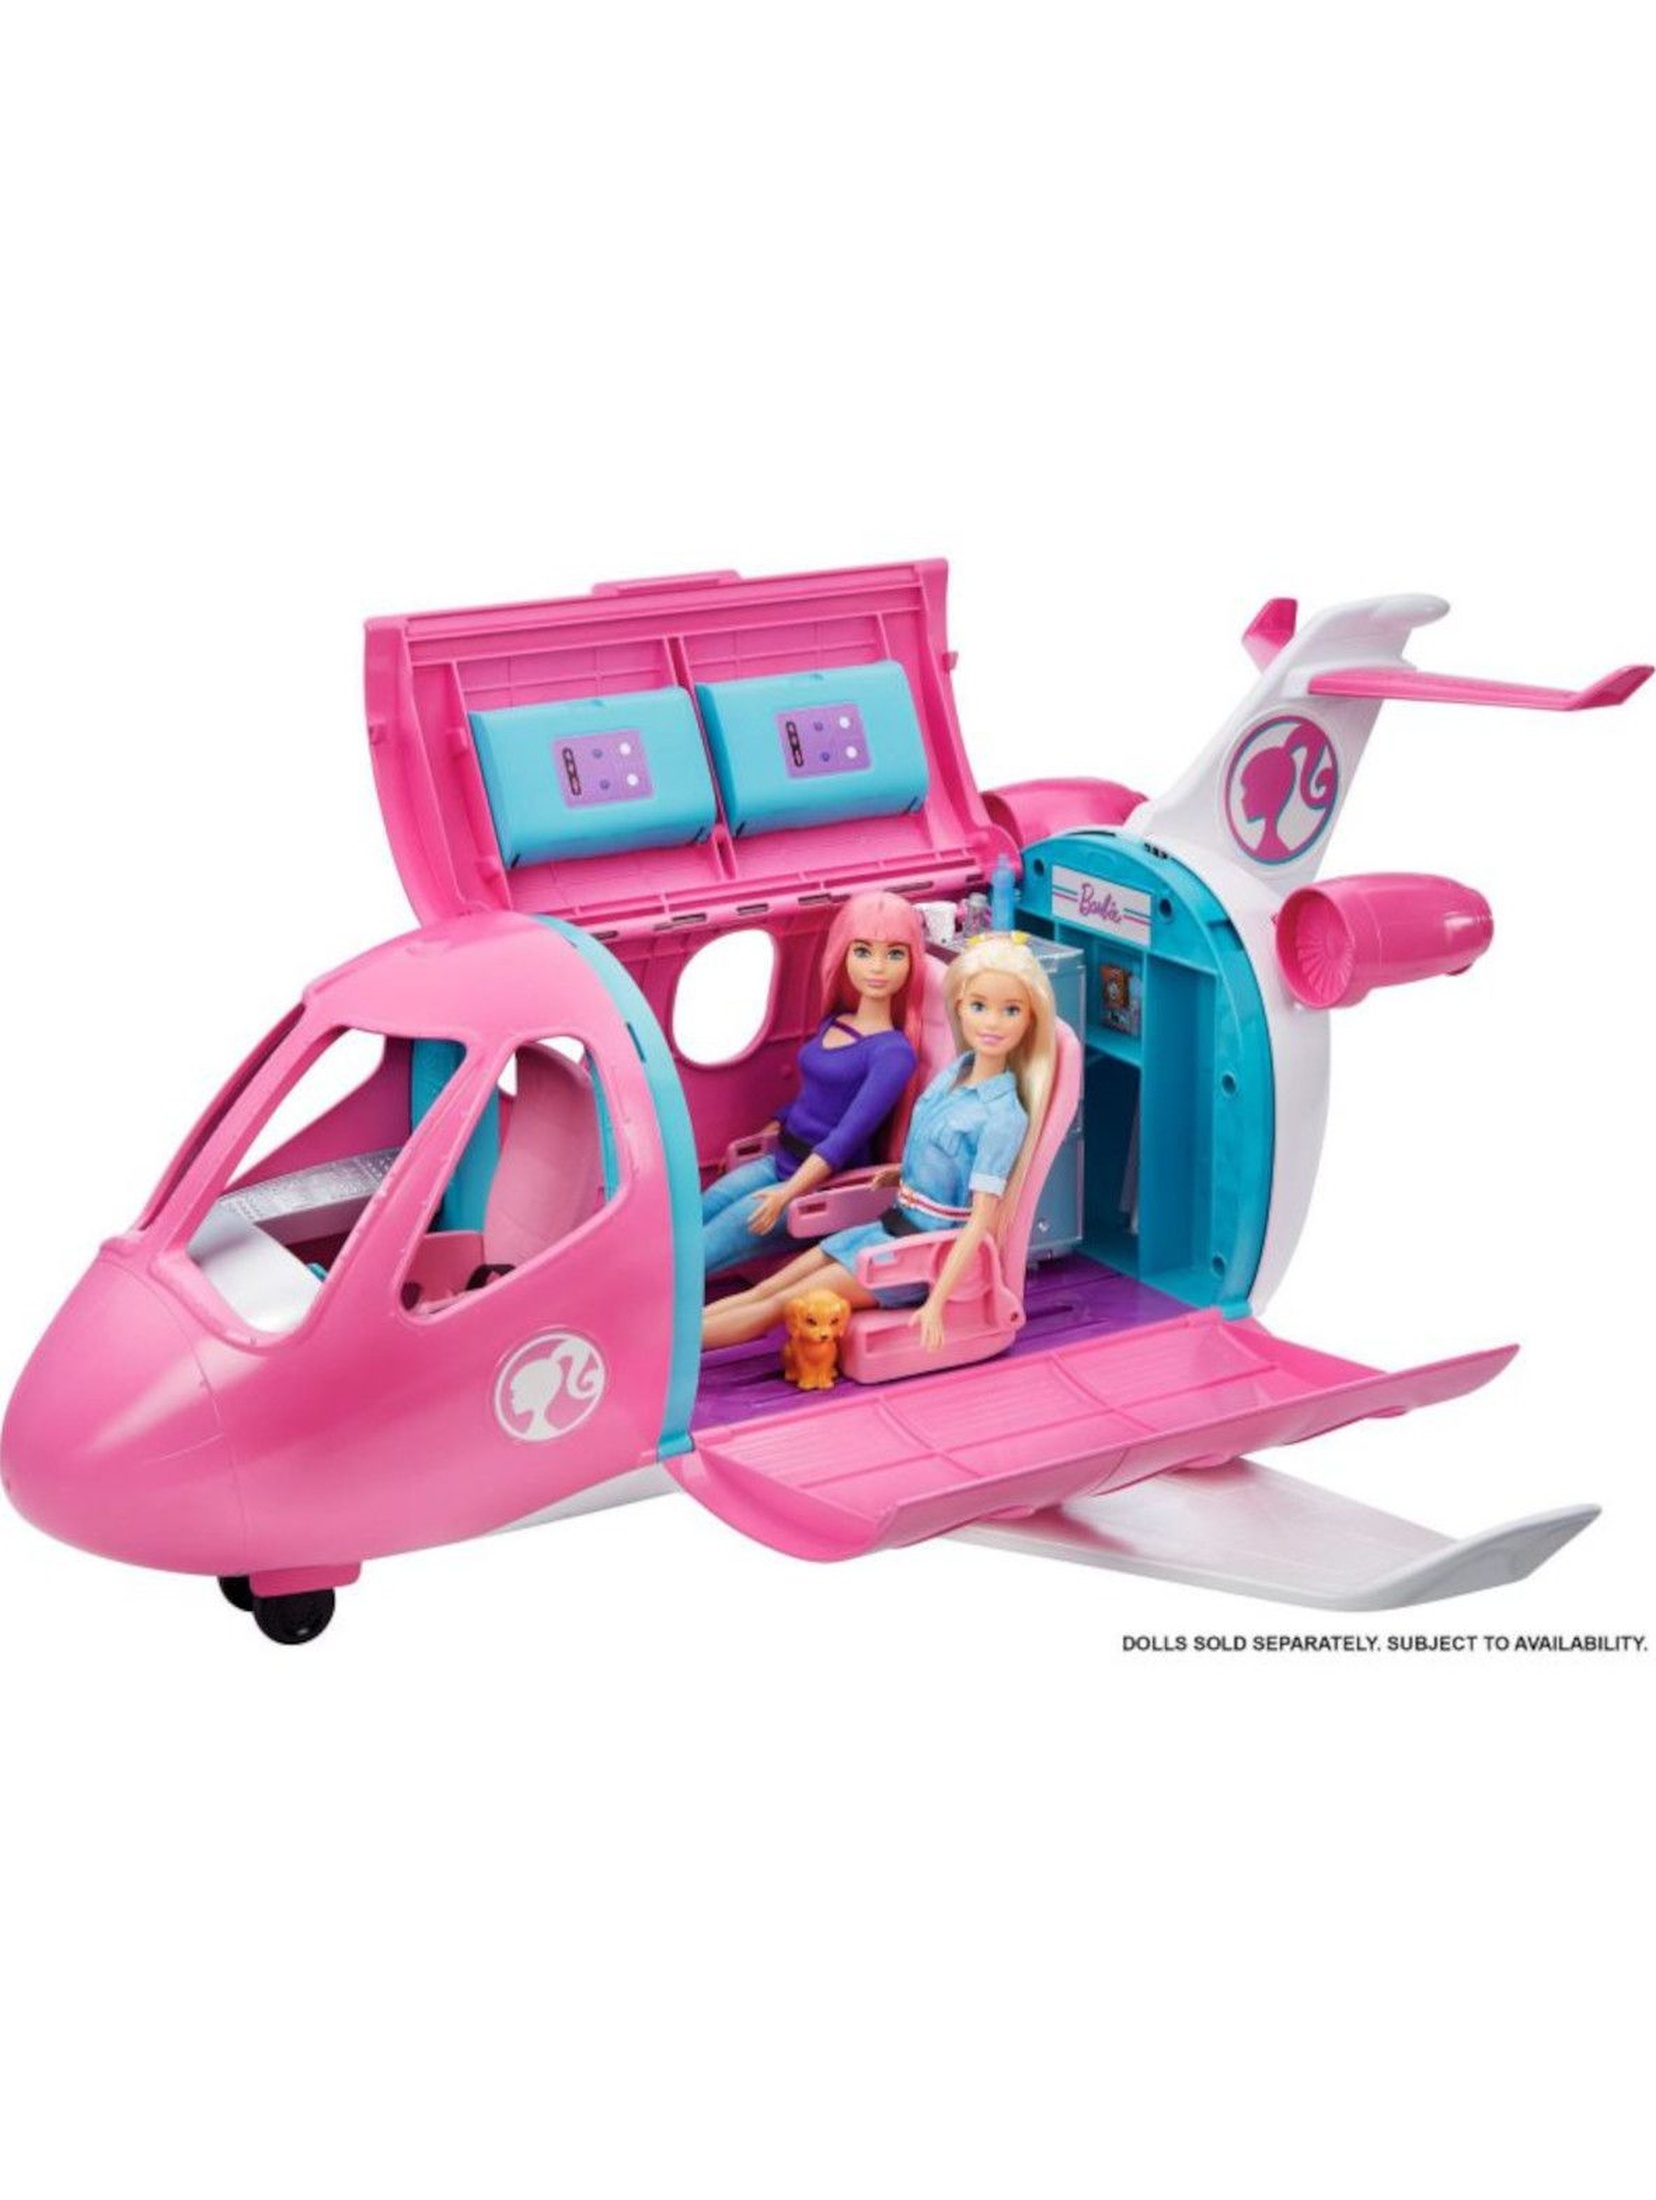 Barbie Dreamhouse Adventures - Różowy Samolot Barbie + 15 Akcesoriów wiek 3+